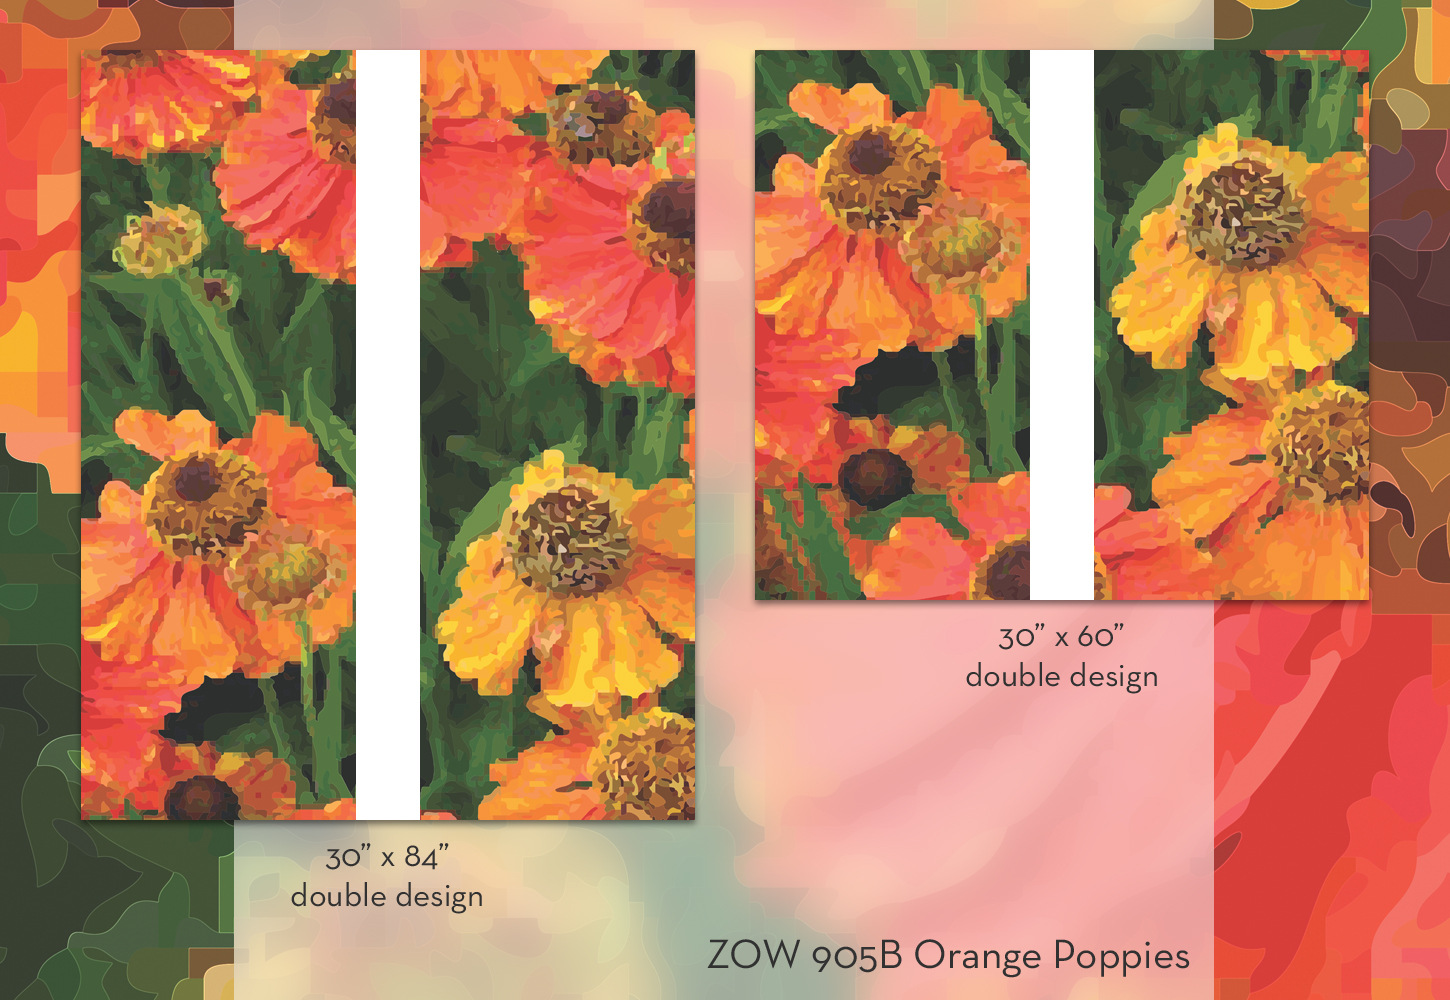 ZOW 905B Orange Poppies